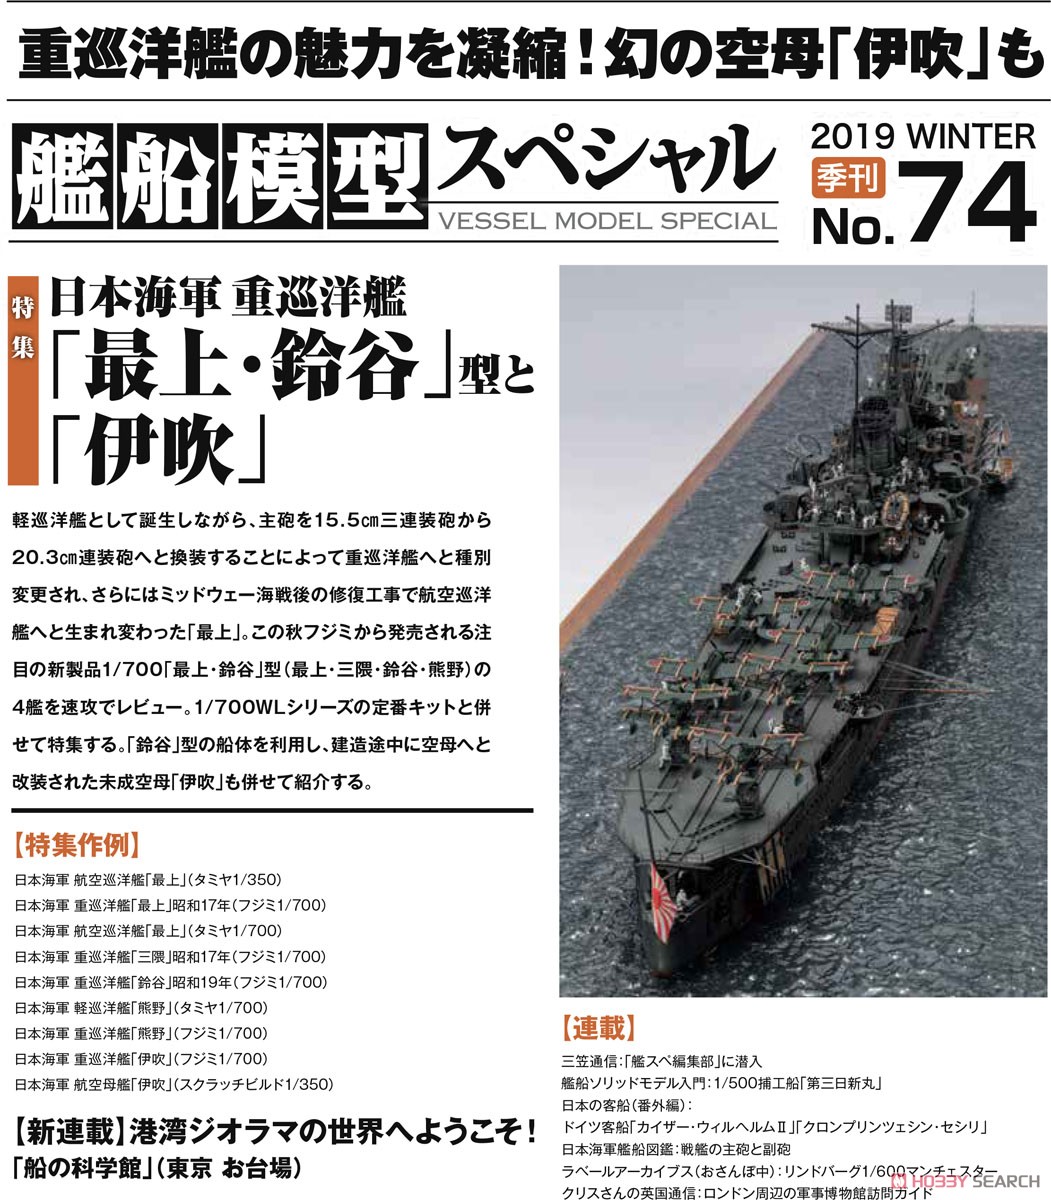 艦船模型スペシャル No.74 (書籍) その他の画像1